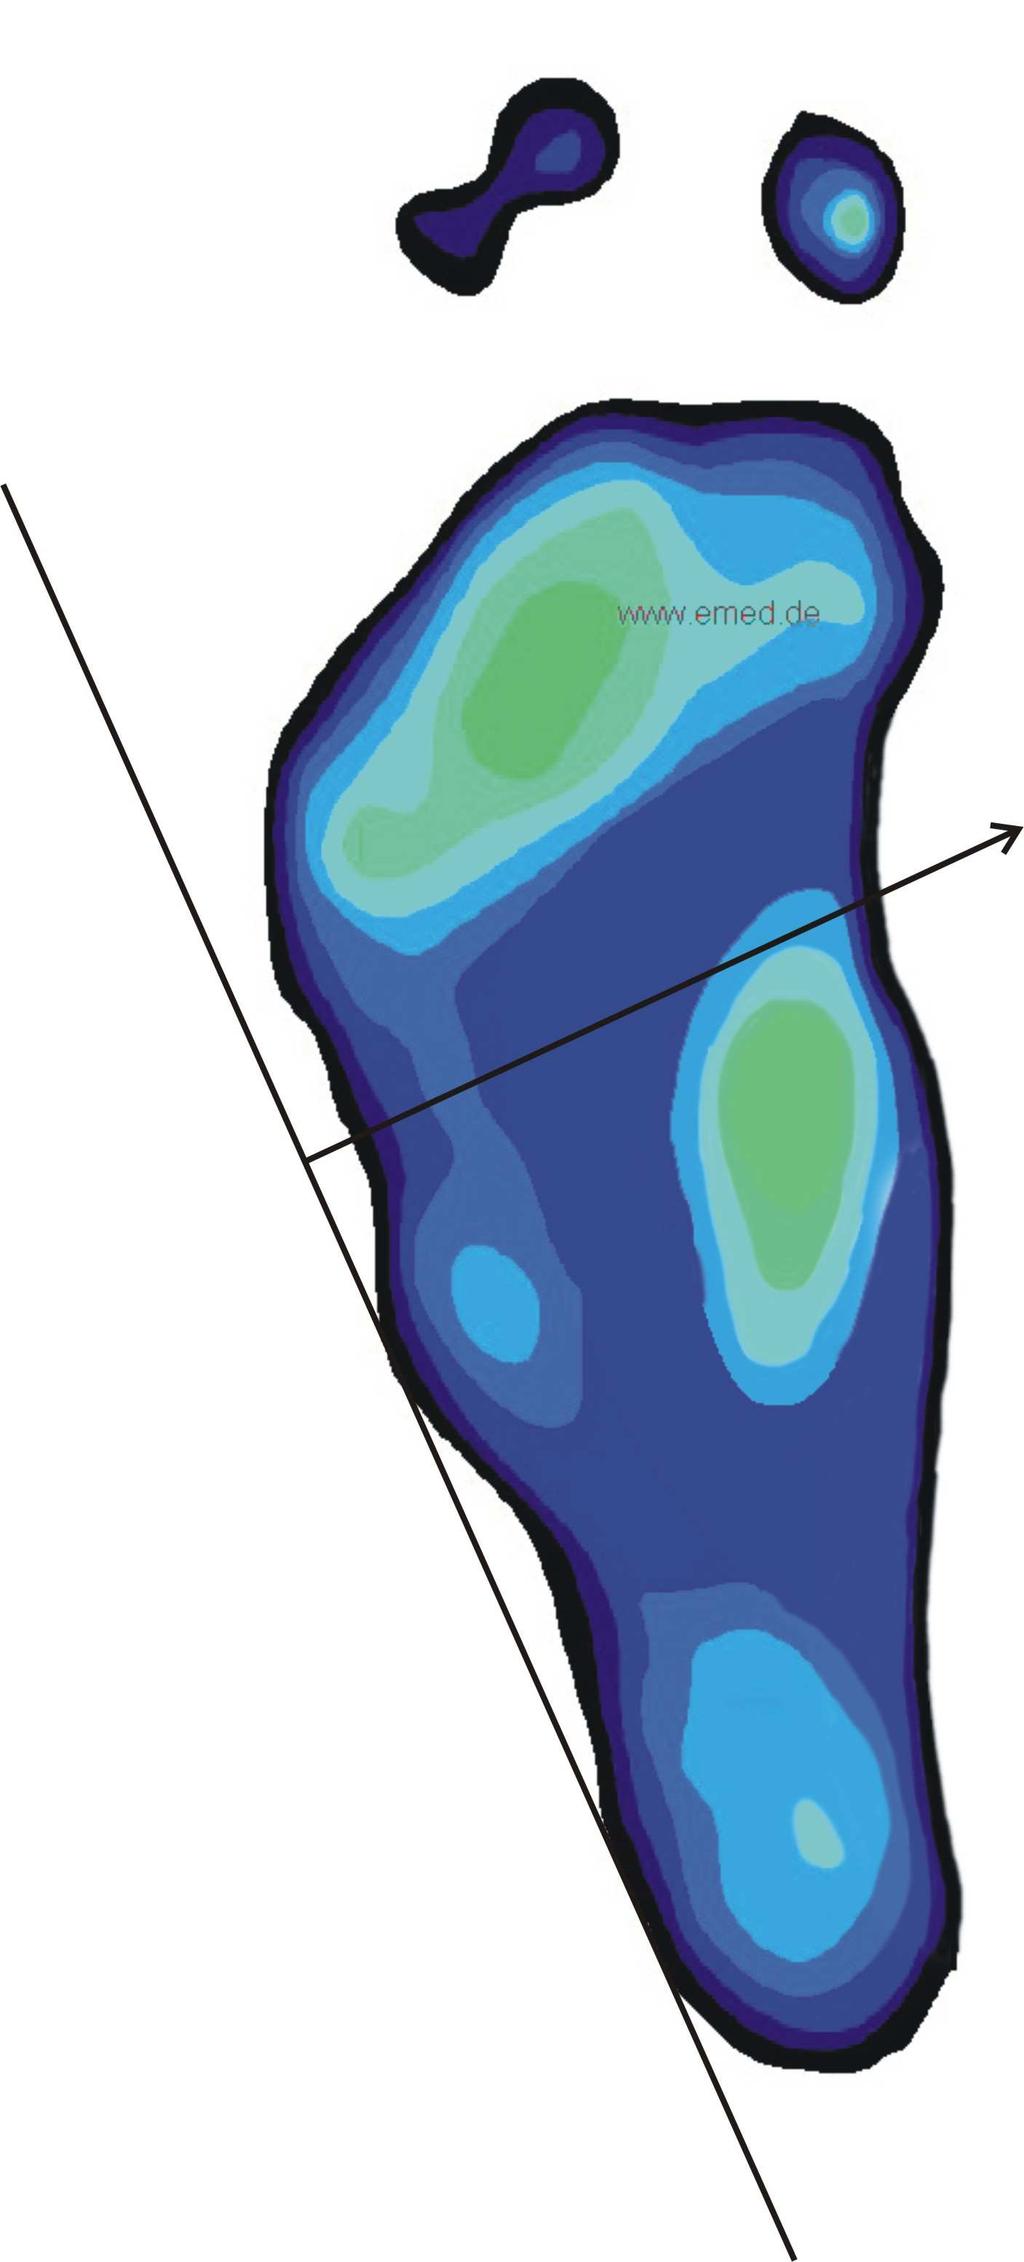 Plochá noha je tedy obecný termín označující výrazné snížení nožní klenby nebo její úplné vymizení. Obecně je také důležité zdůraznit rozlišení vrozené a získané ploché nohy. Např.